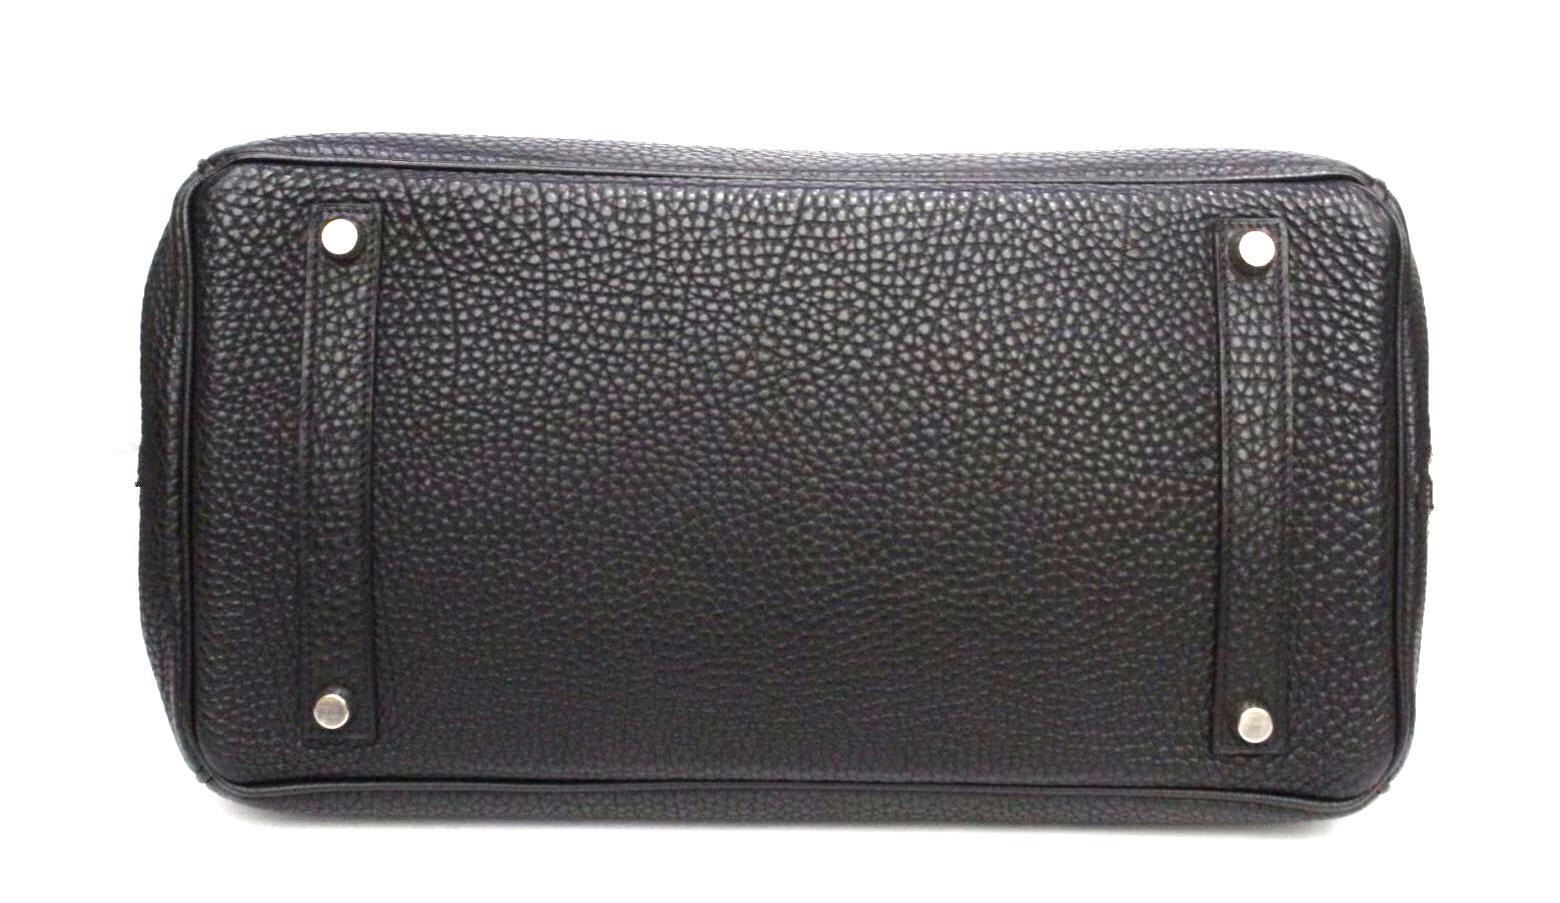 Black Hermès Birkin 35 Noir Togo Leather Bag